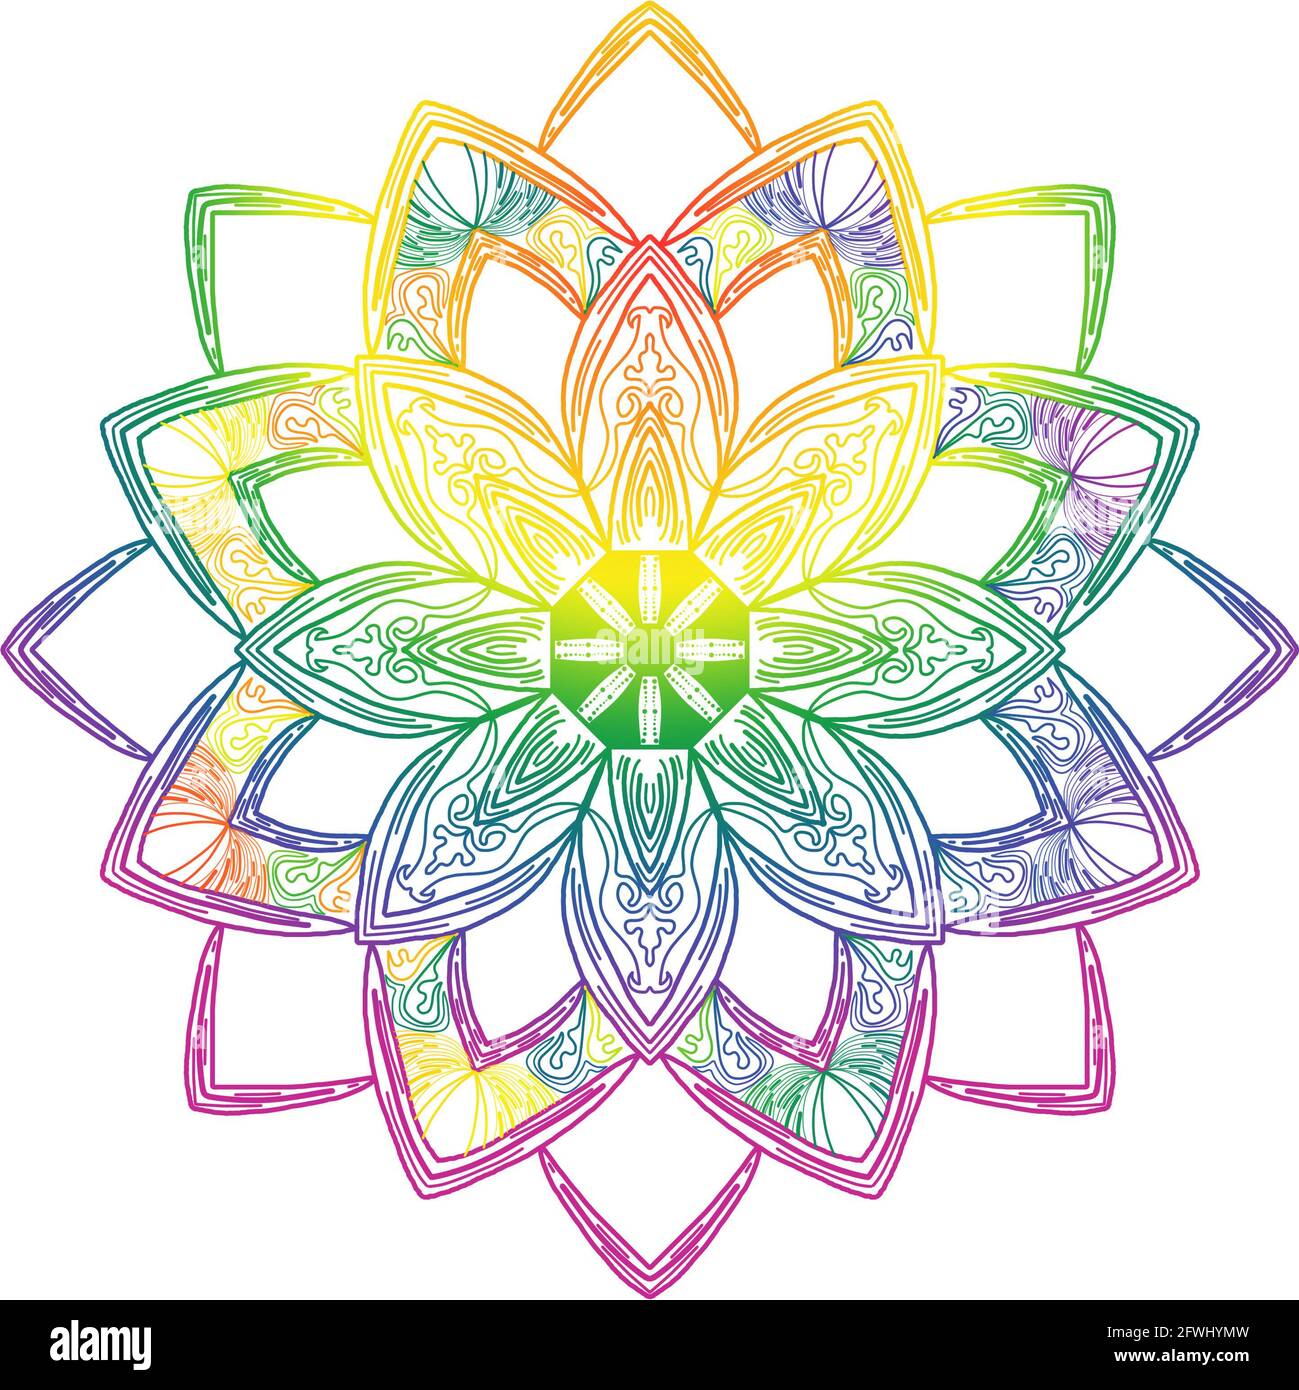 Diseño de mandala dibujado a mano con colores de orgullo arcoiris sobre fondo blanco. Ideal para festivales, fondos de pantalla, escritorio. Foto de stock